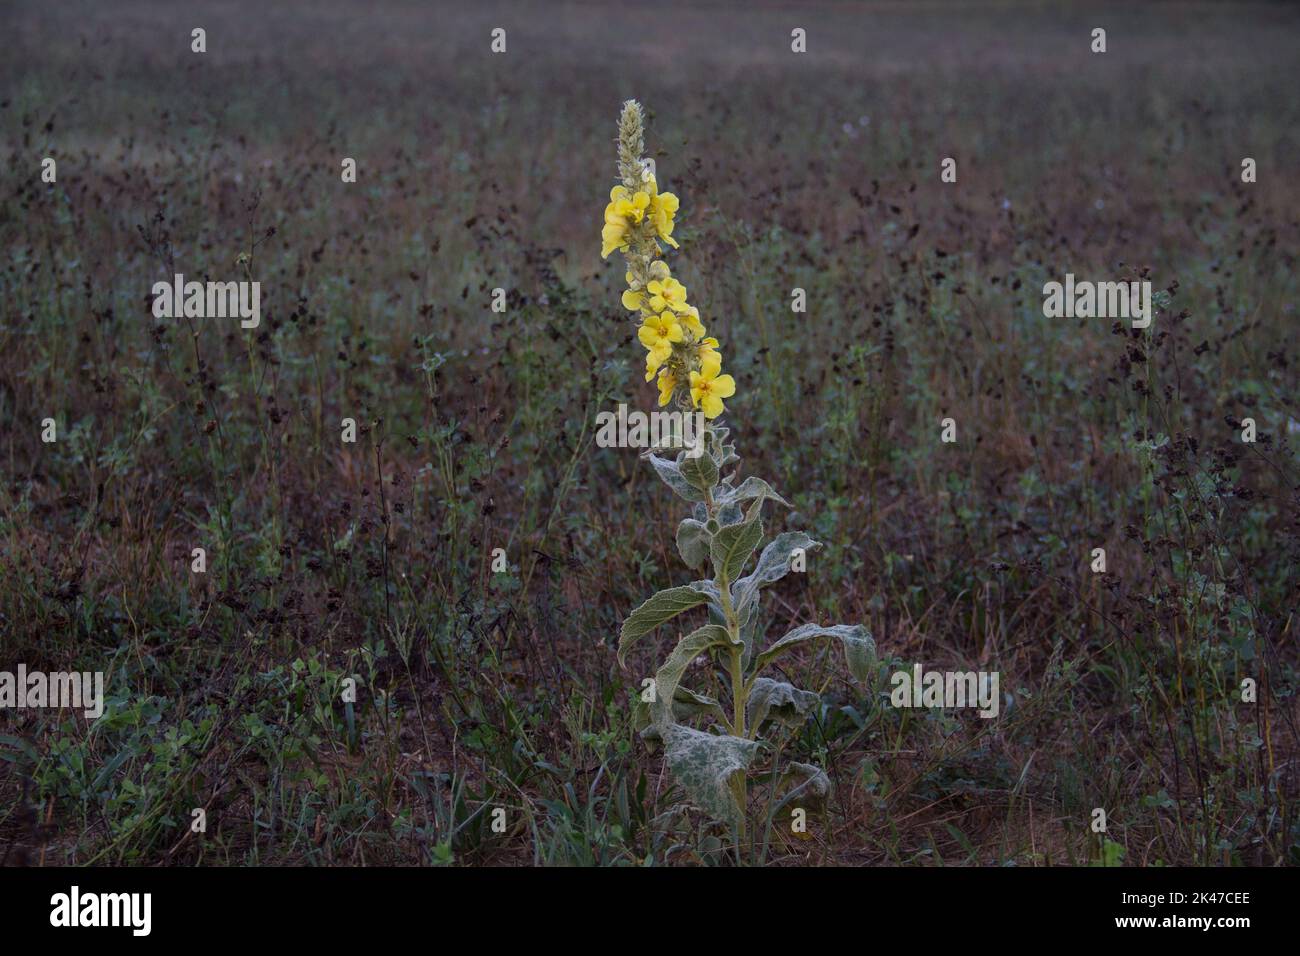 Yellow flower, Densflower mullein, at dawn glowing in a dark field Stock Photo